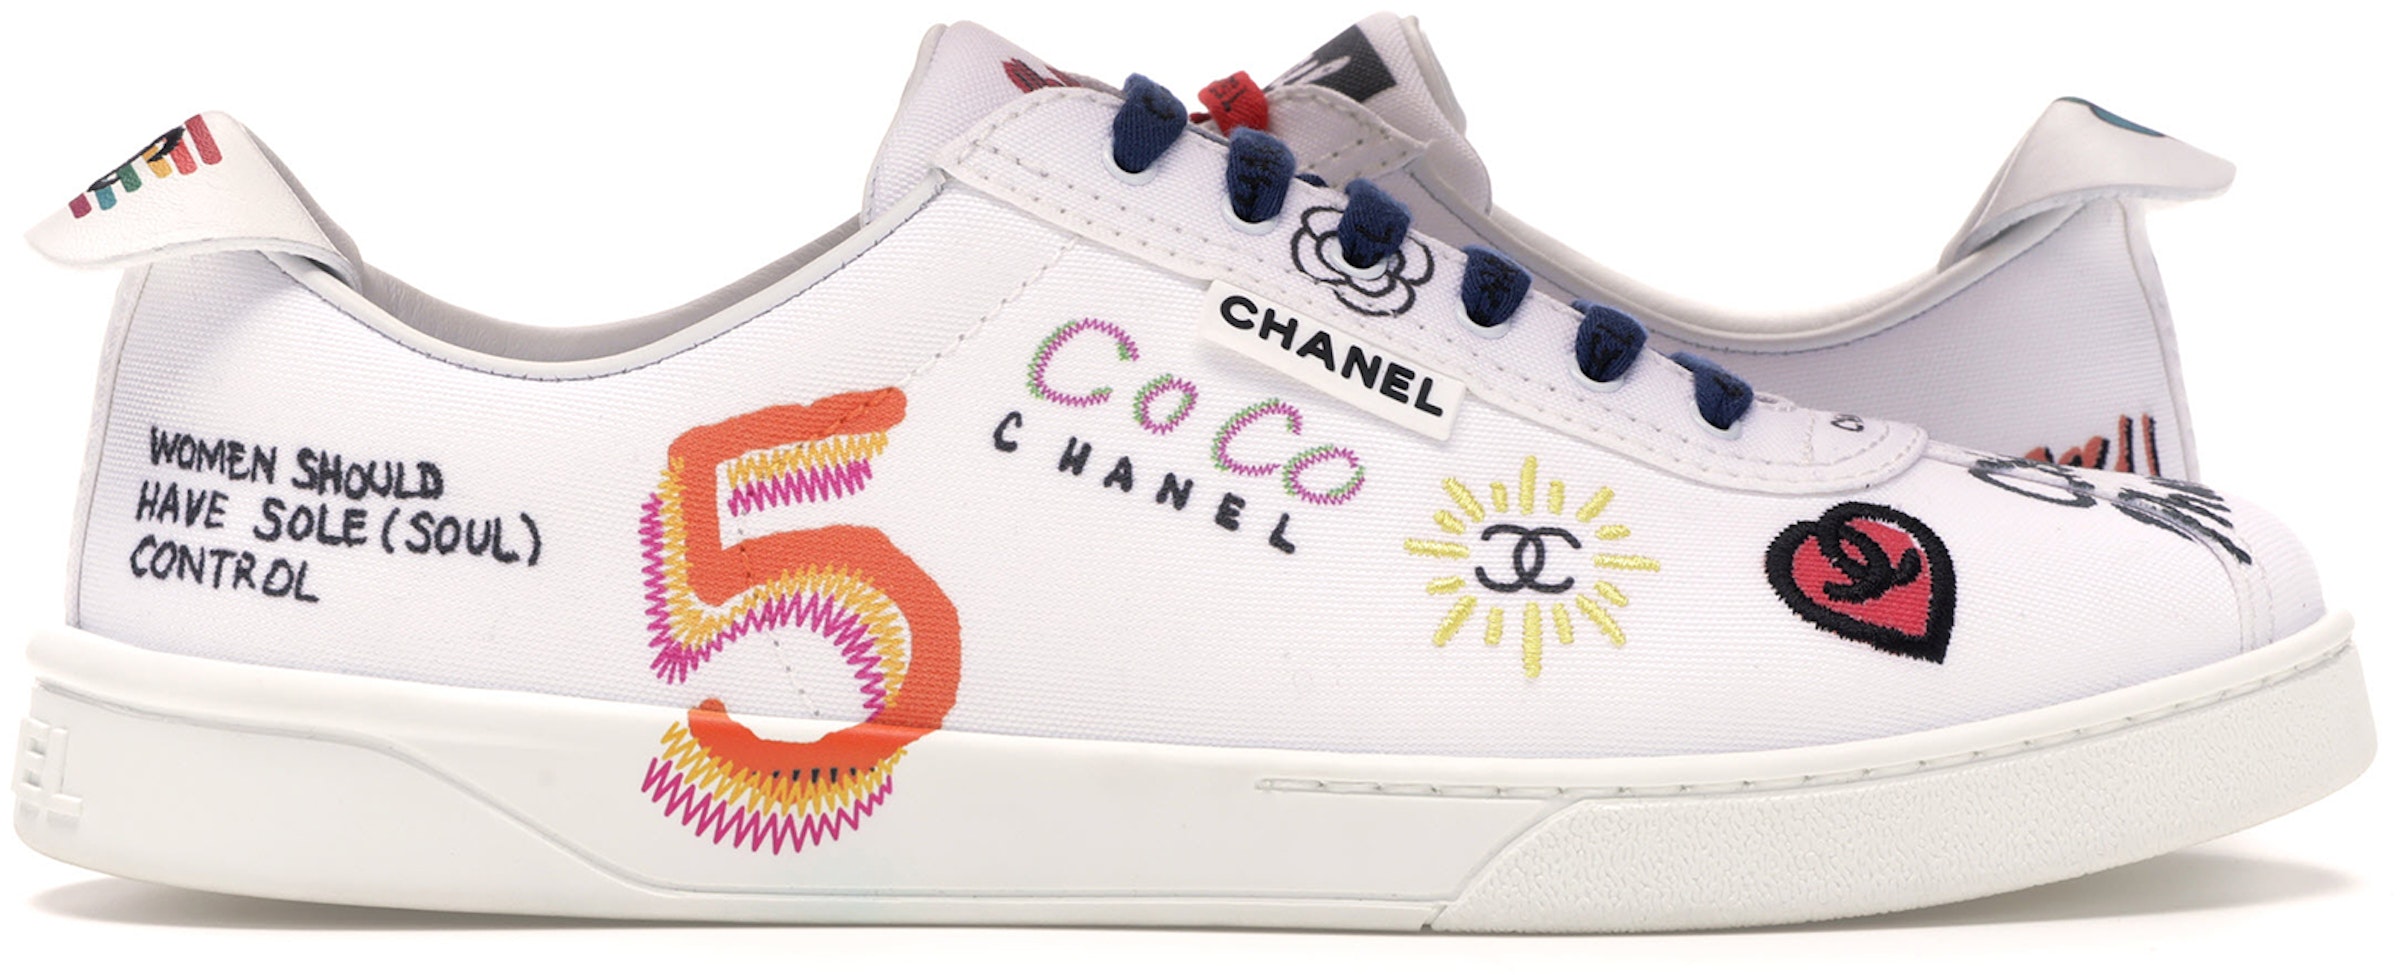 Sneakers Pharrell White Multi-Color - 19D G34878X53027 C2340 10B -